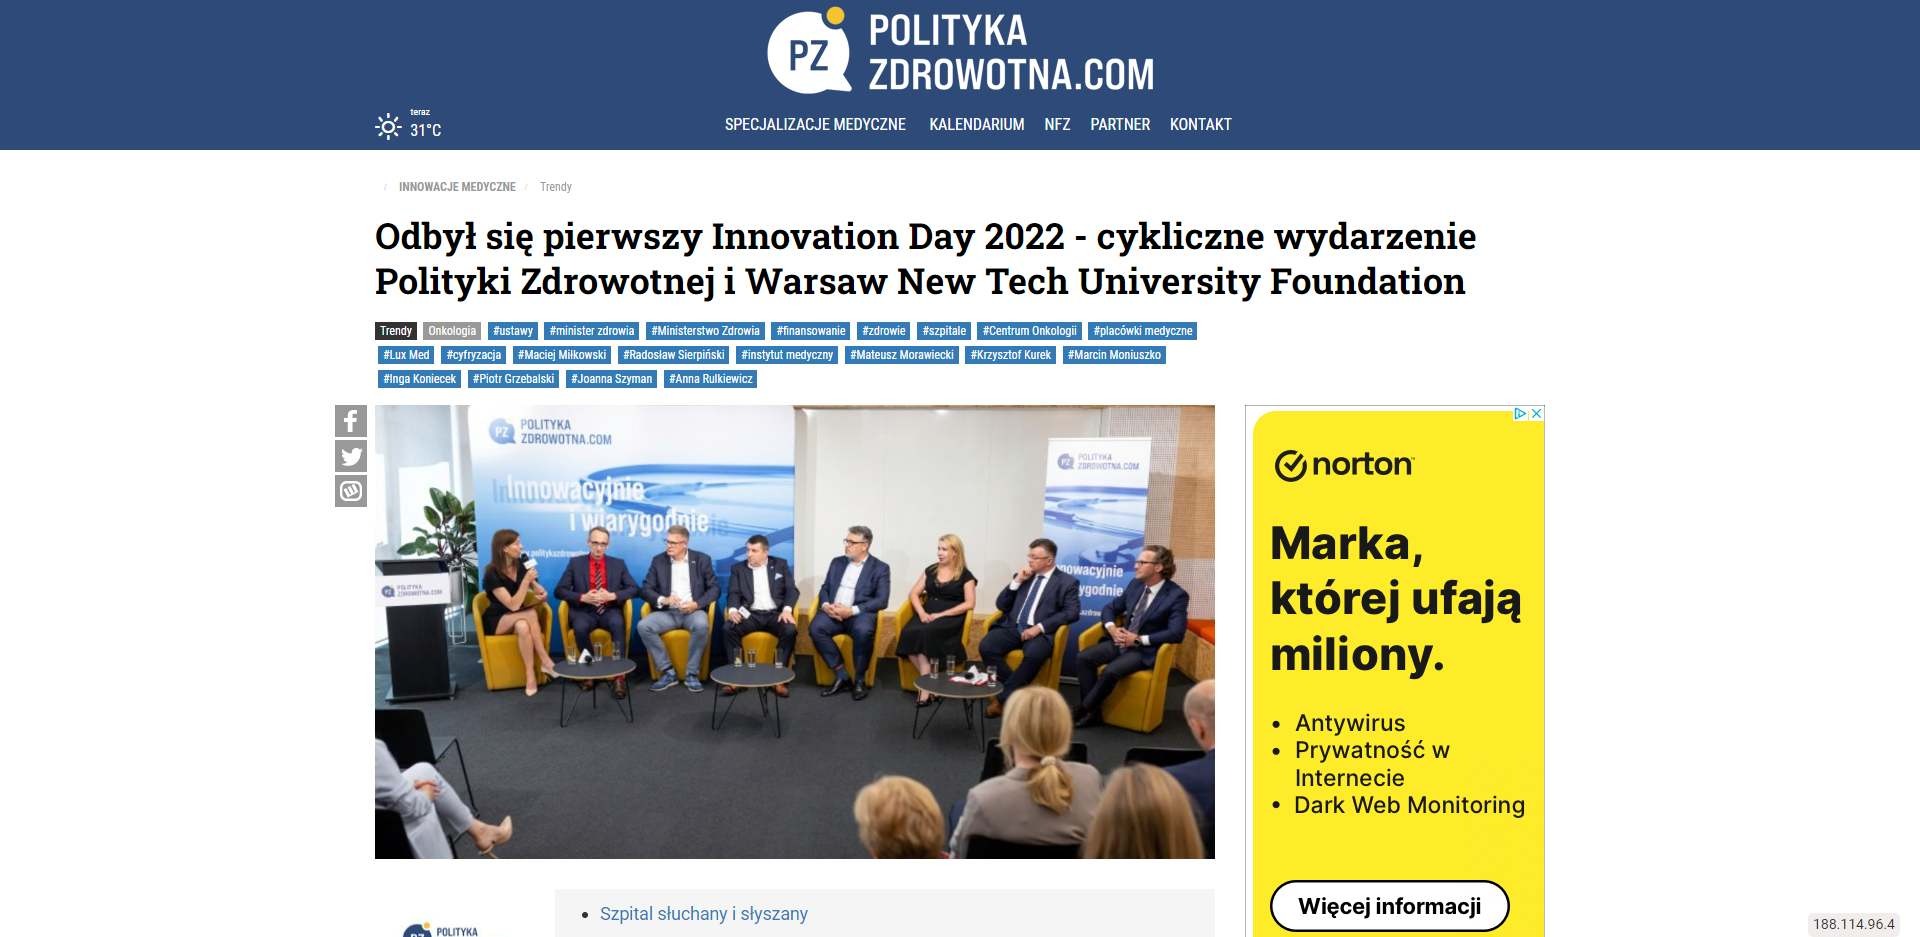 odbyl sie pierwszy innovation day cykliczne wydarzenie polityki zdrowotnej i warsaw new tech university foundation